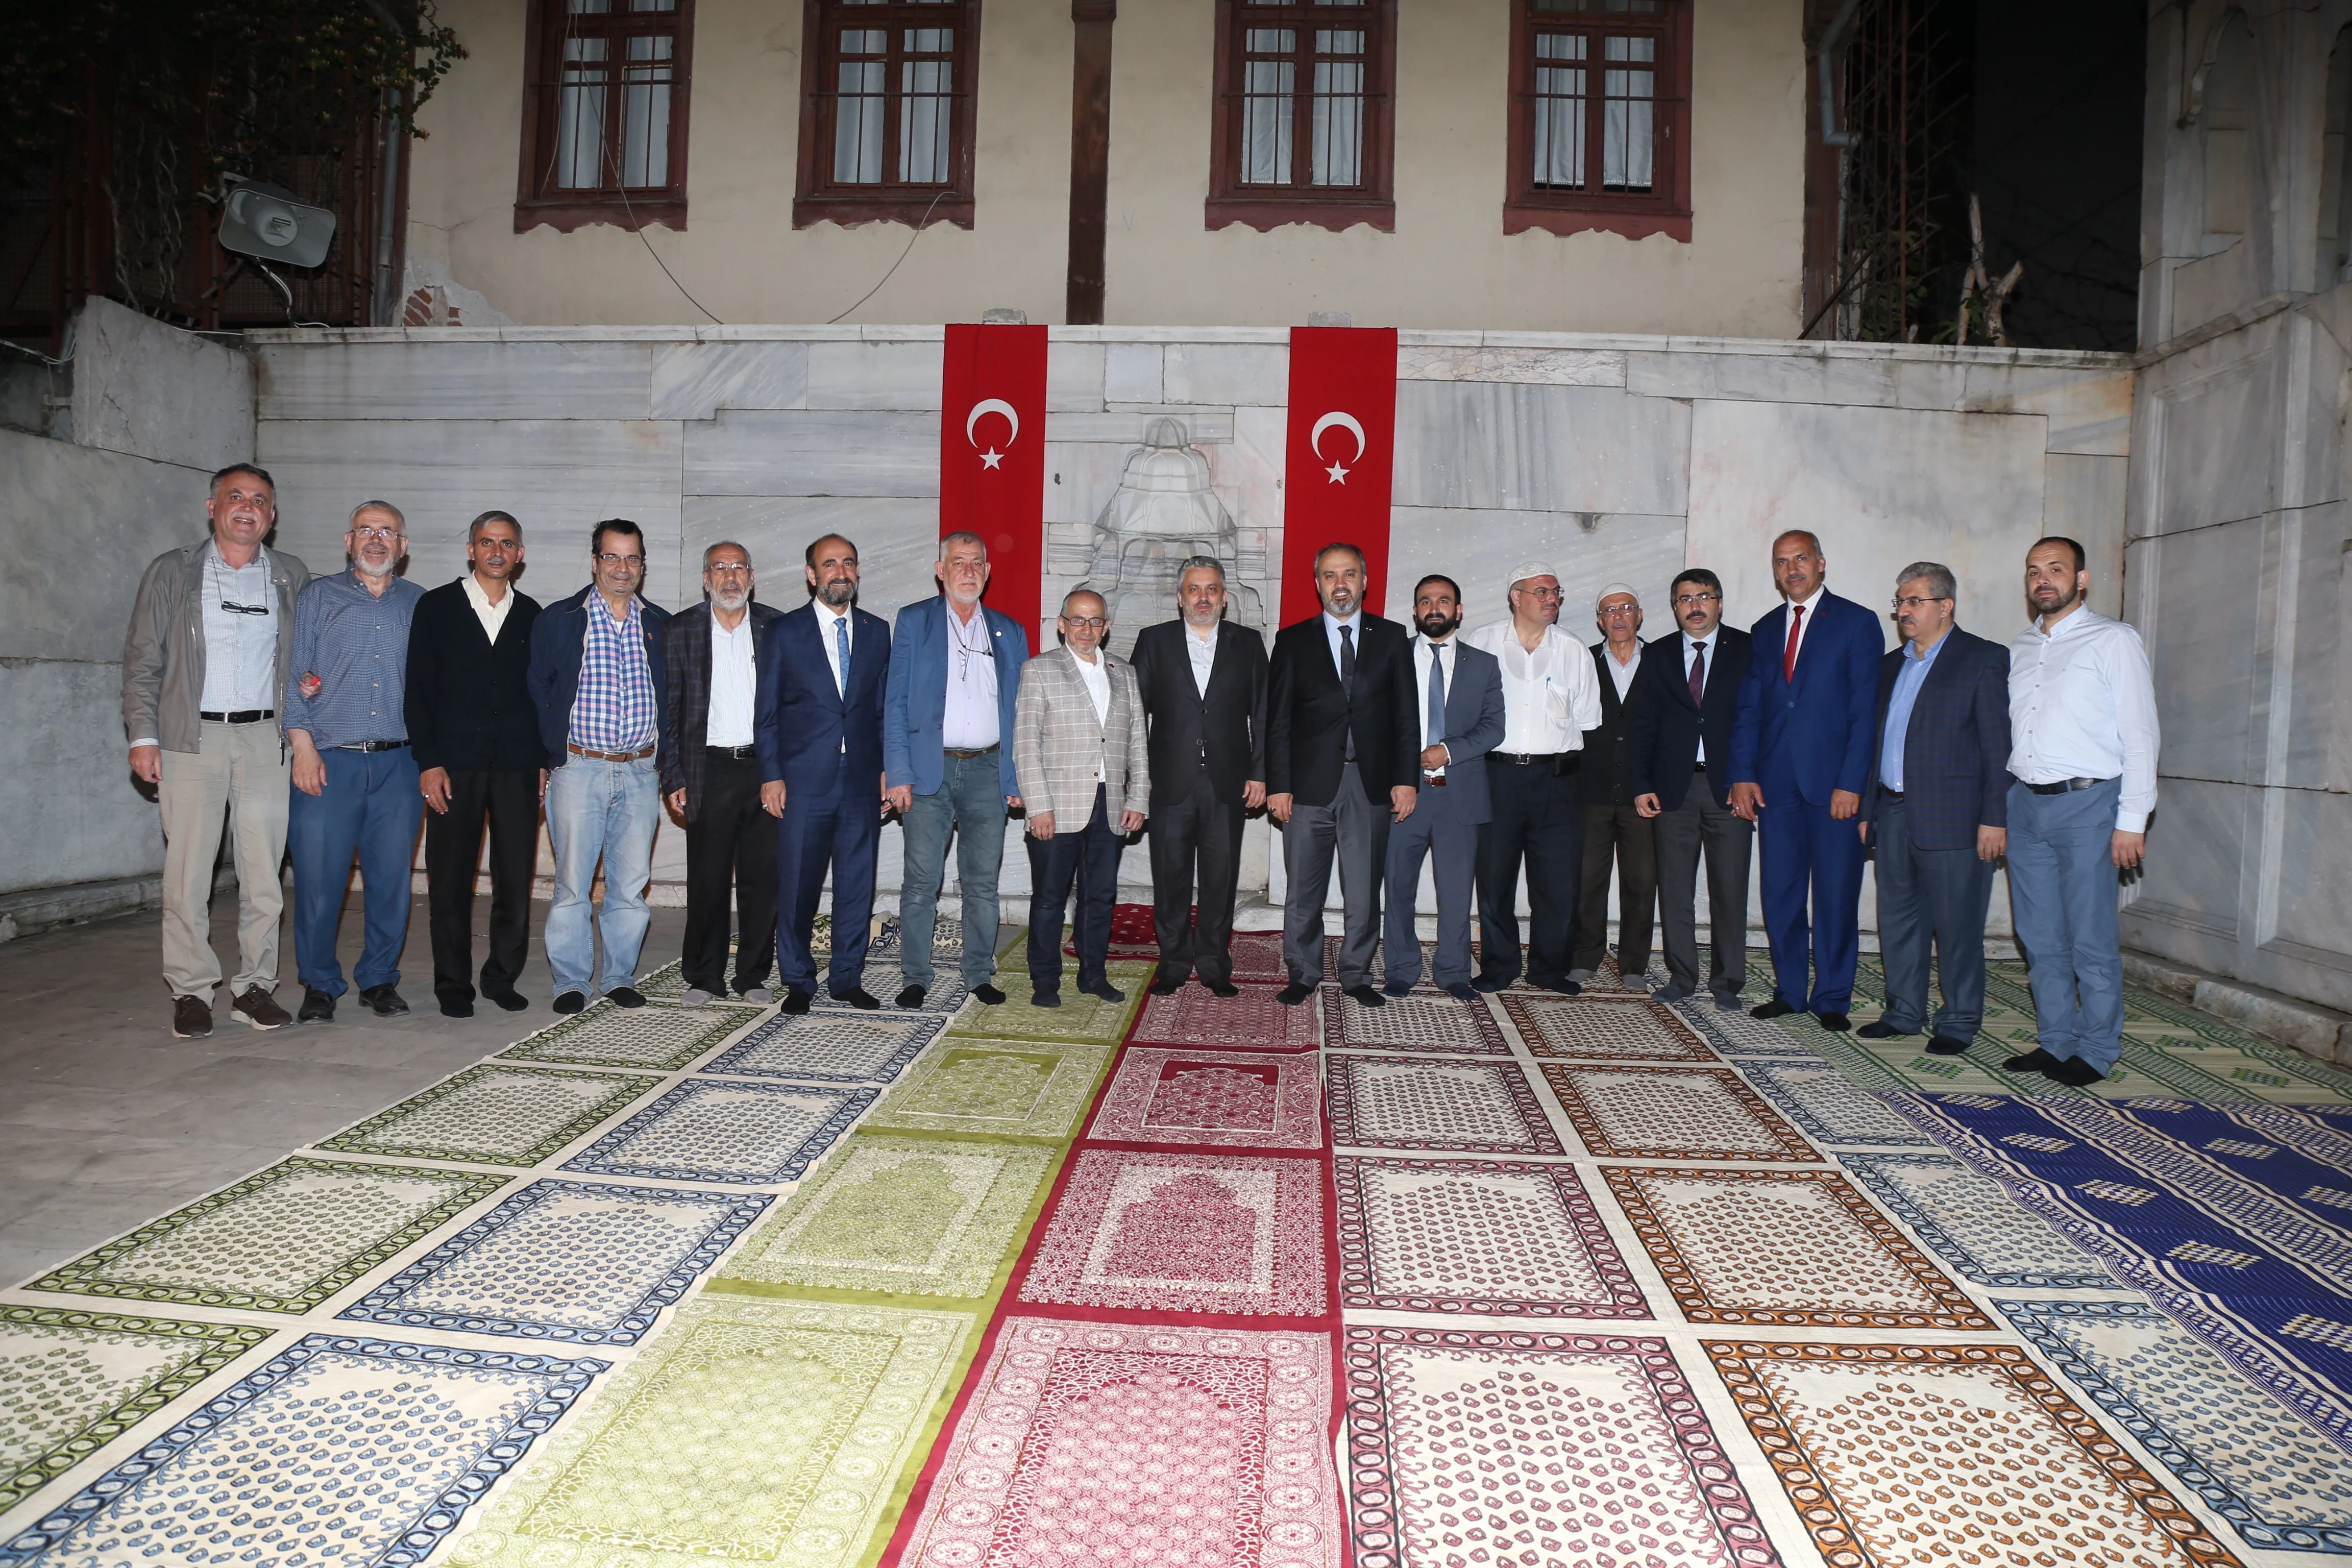 Bursa Büyükşehir Belediye Başkanı ilk teravihi Namazgah Mescidi’nde kıldı